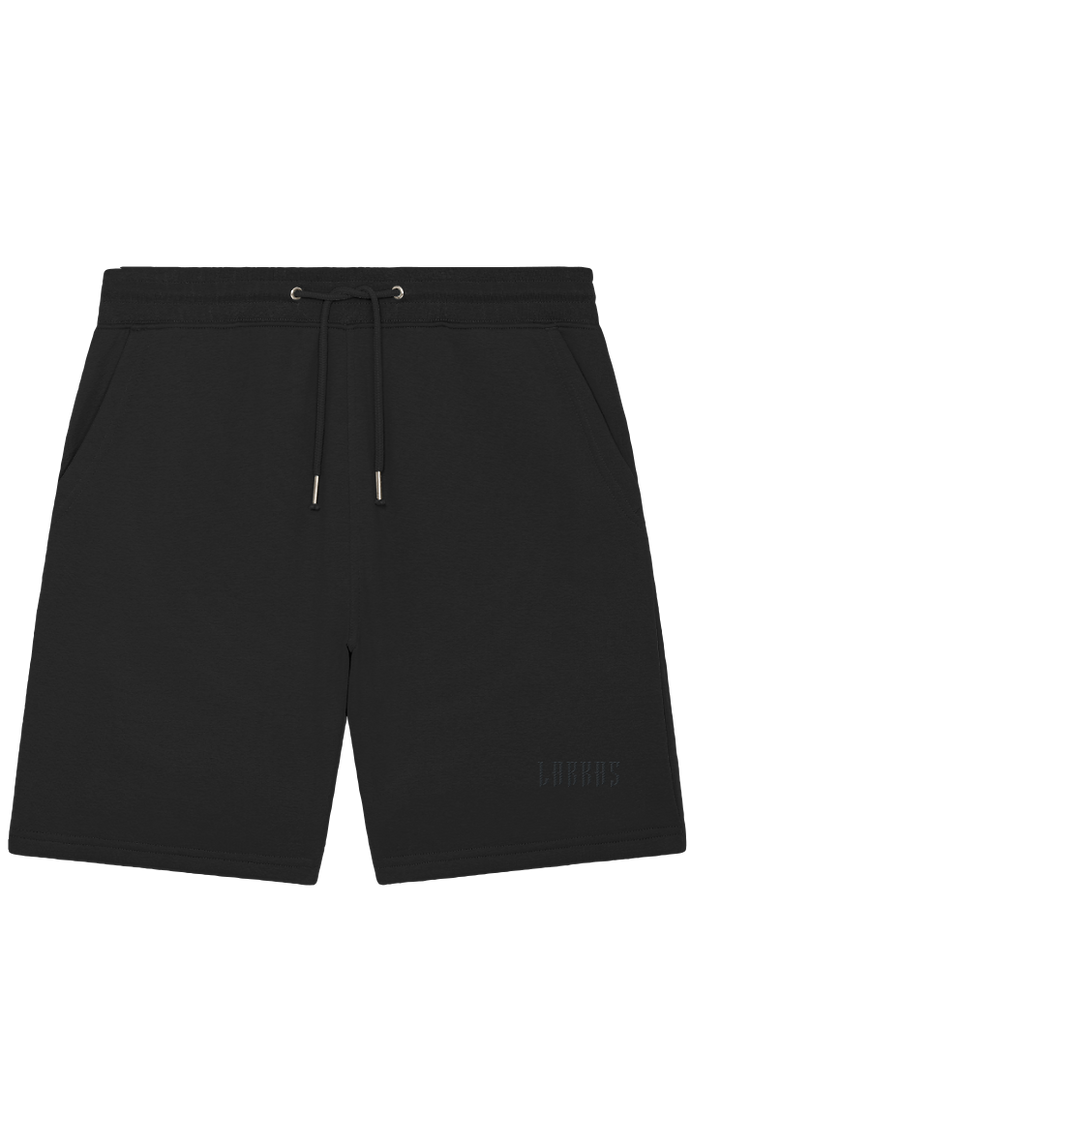 Brooklyn Shorts